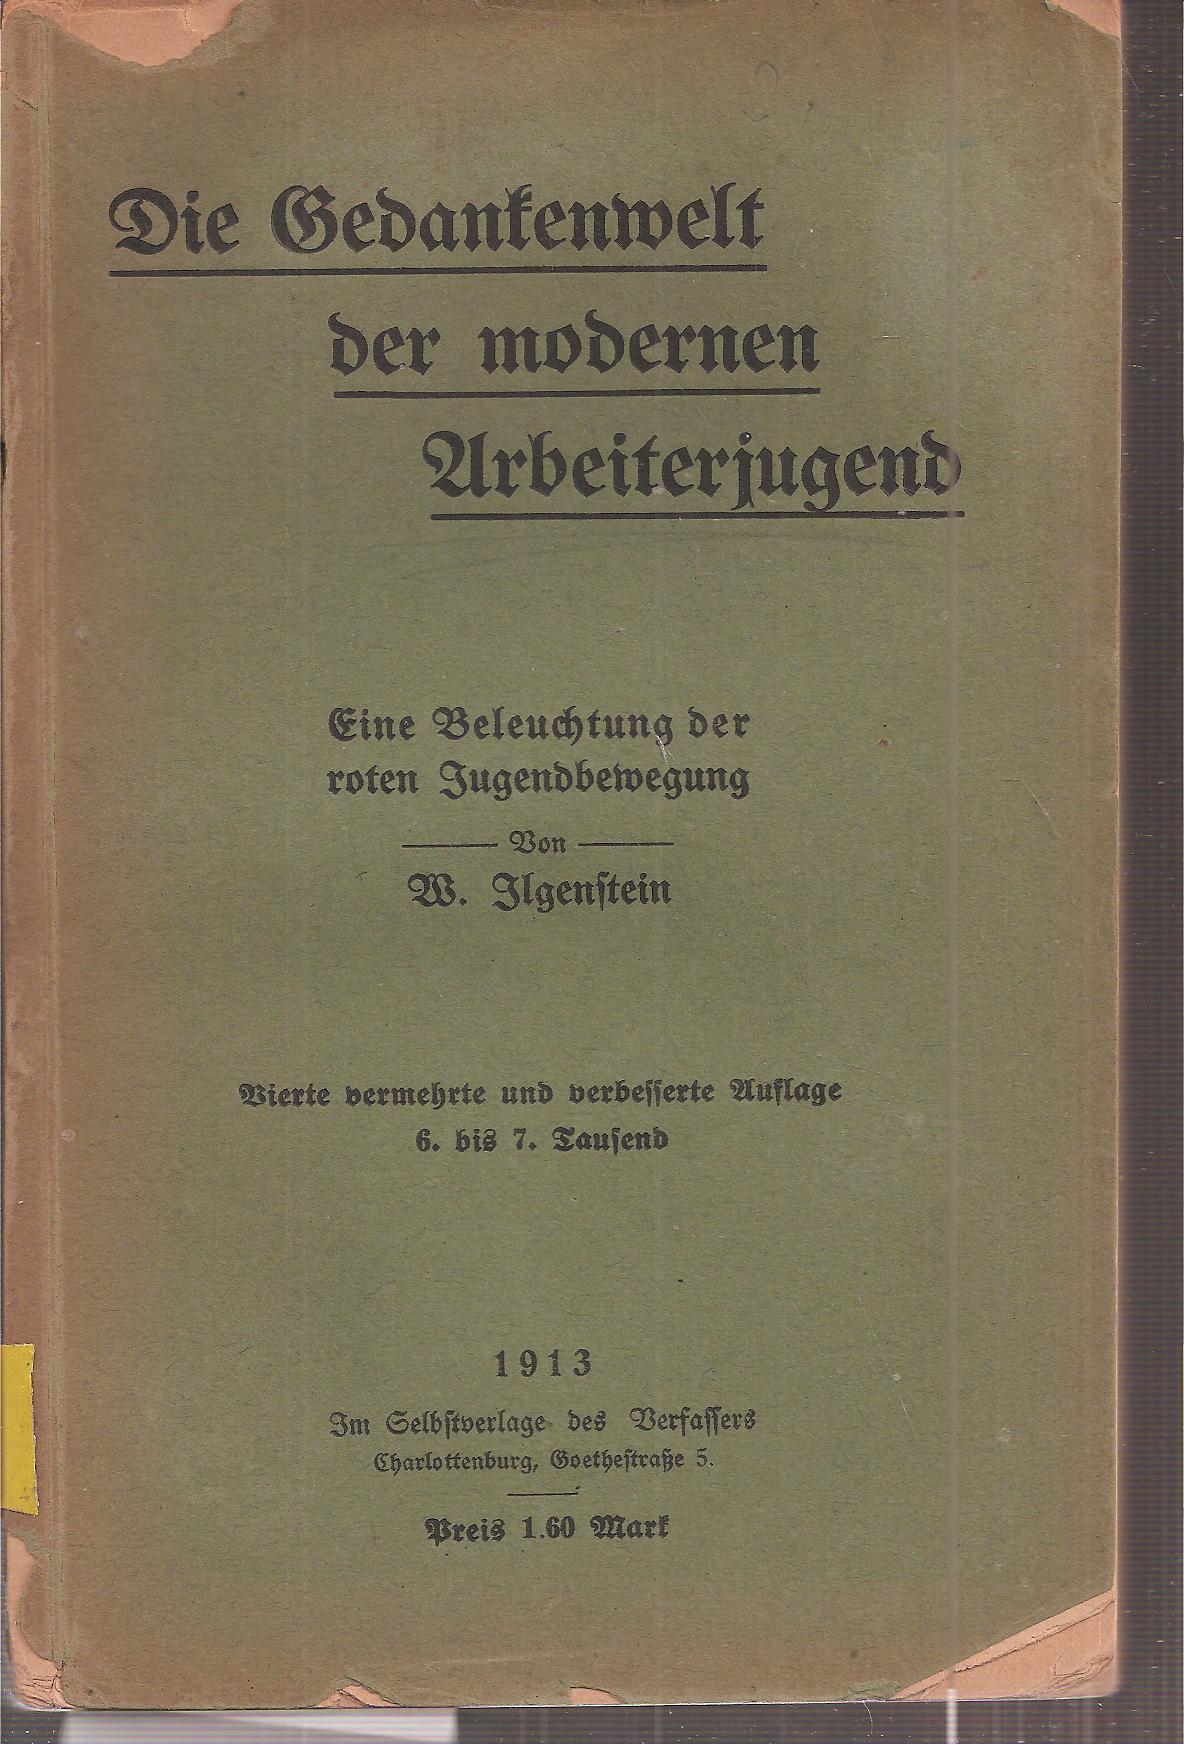 Ilgenstein,W.  Die Gedankenwelt der modernen Arbeiterjugend 